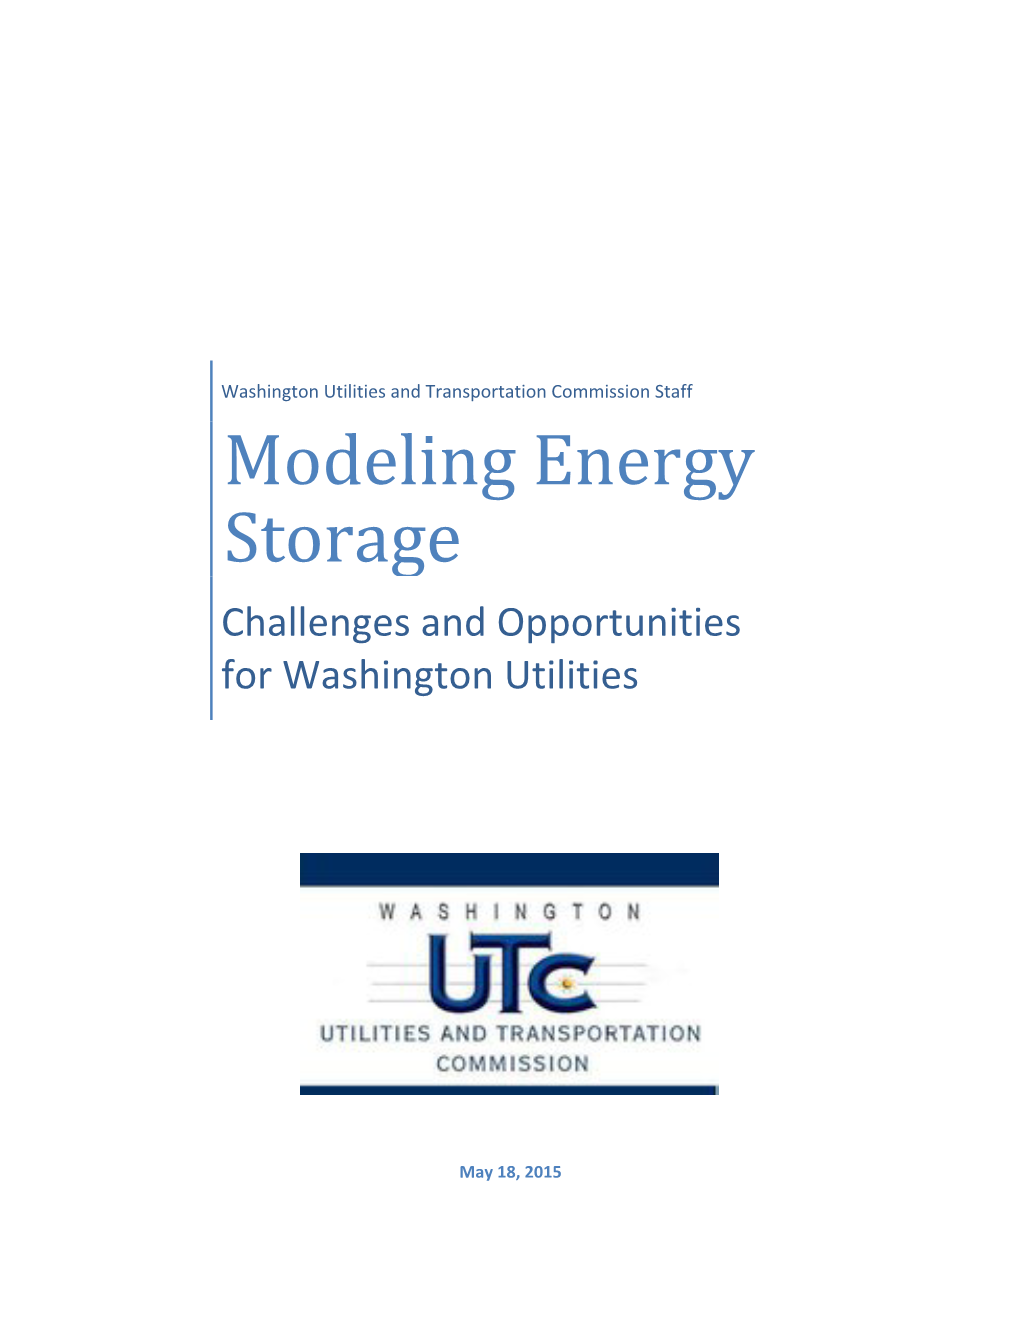 Modeling Energy Storage